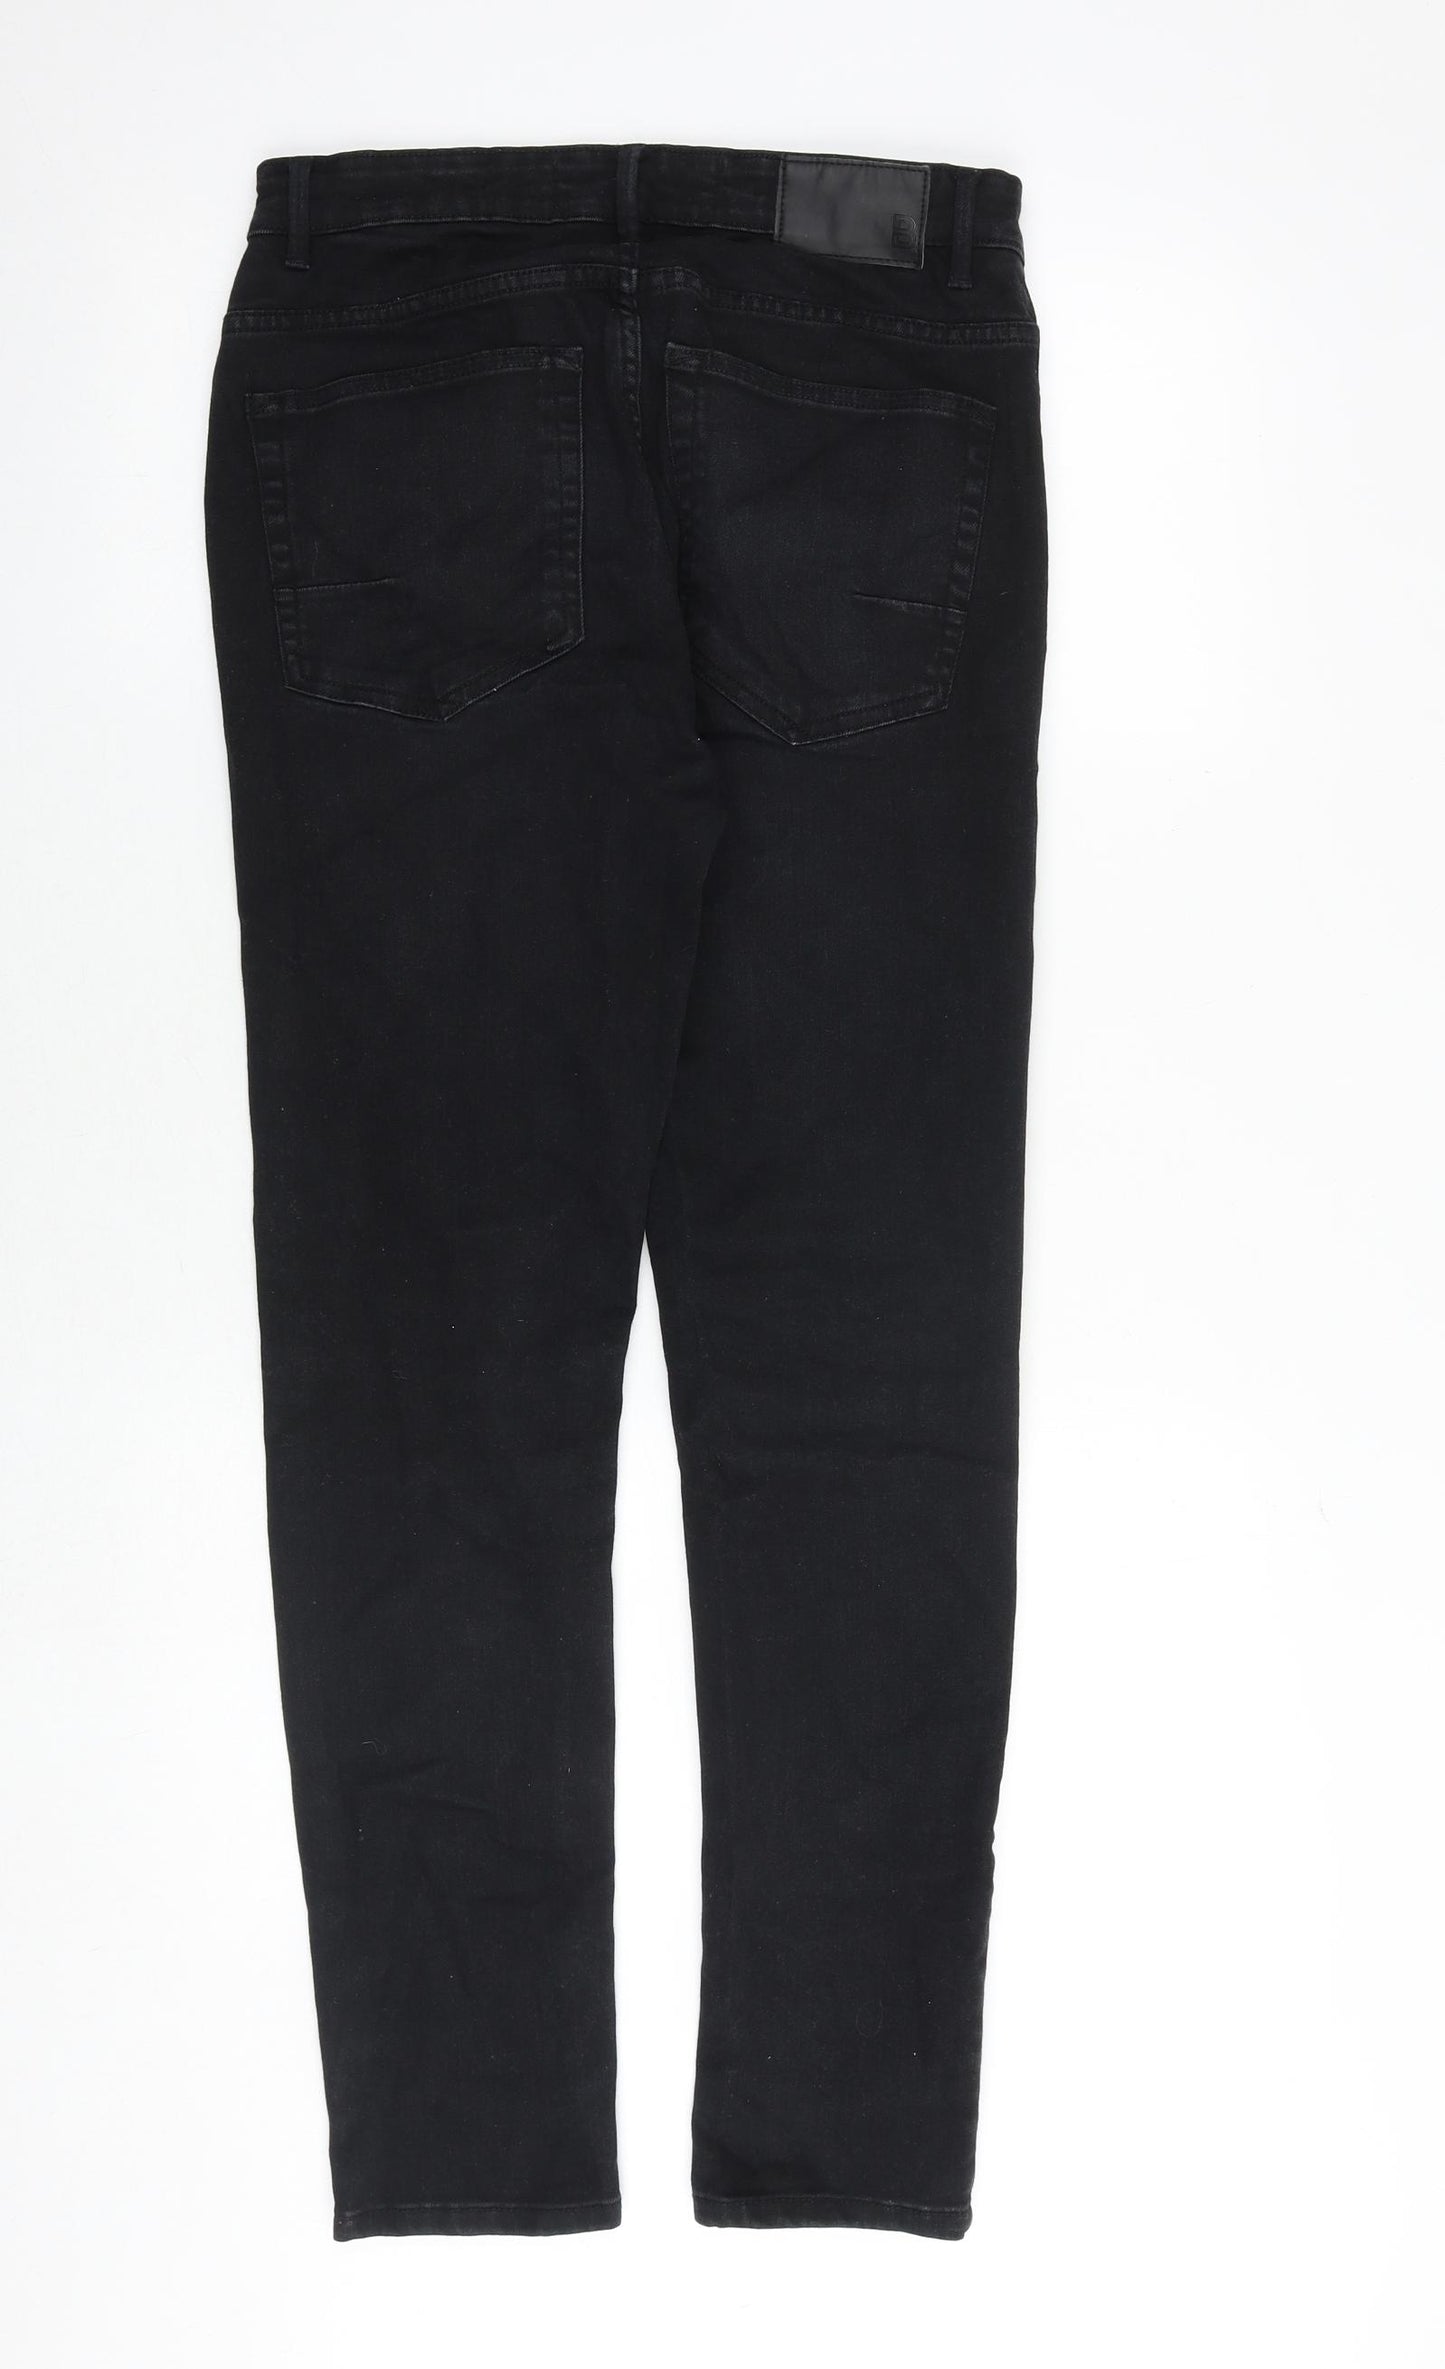 Burton Mens Black Cotton Skinny Jeans Size 30 in Slim Zip